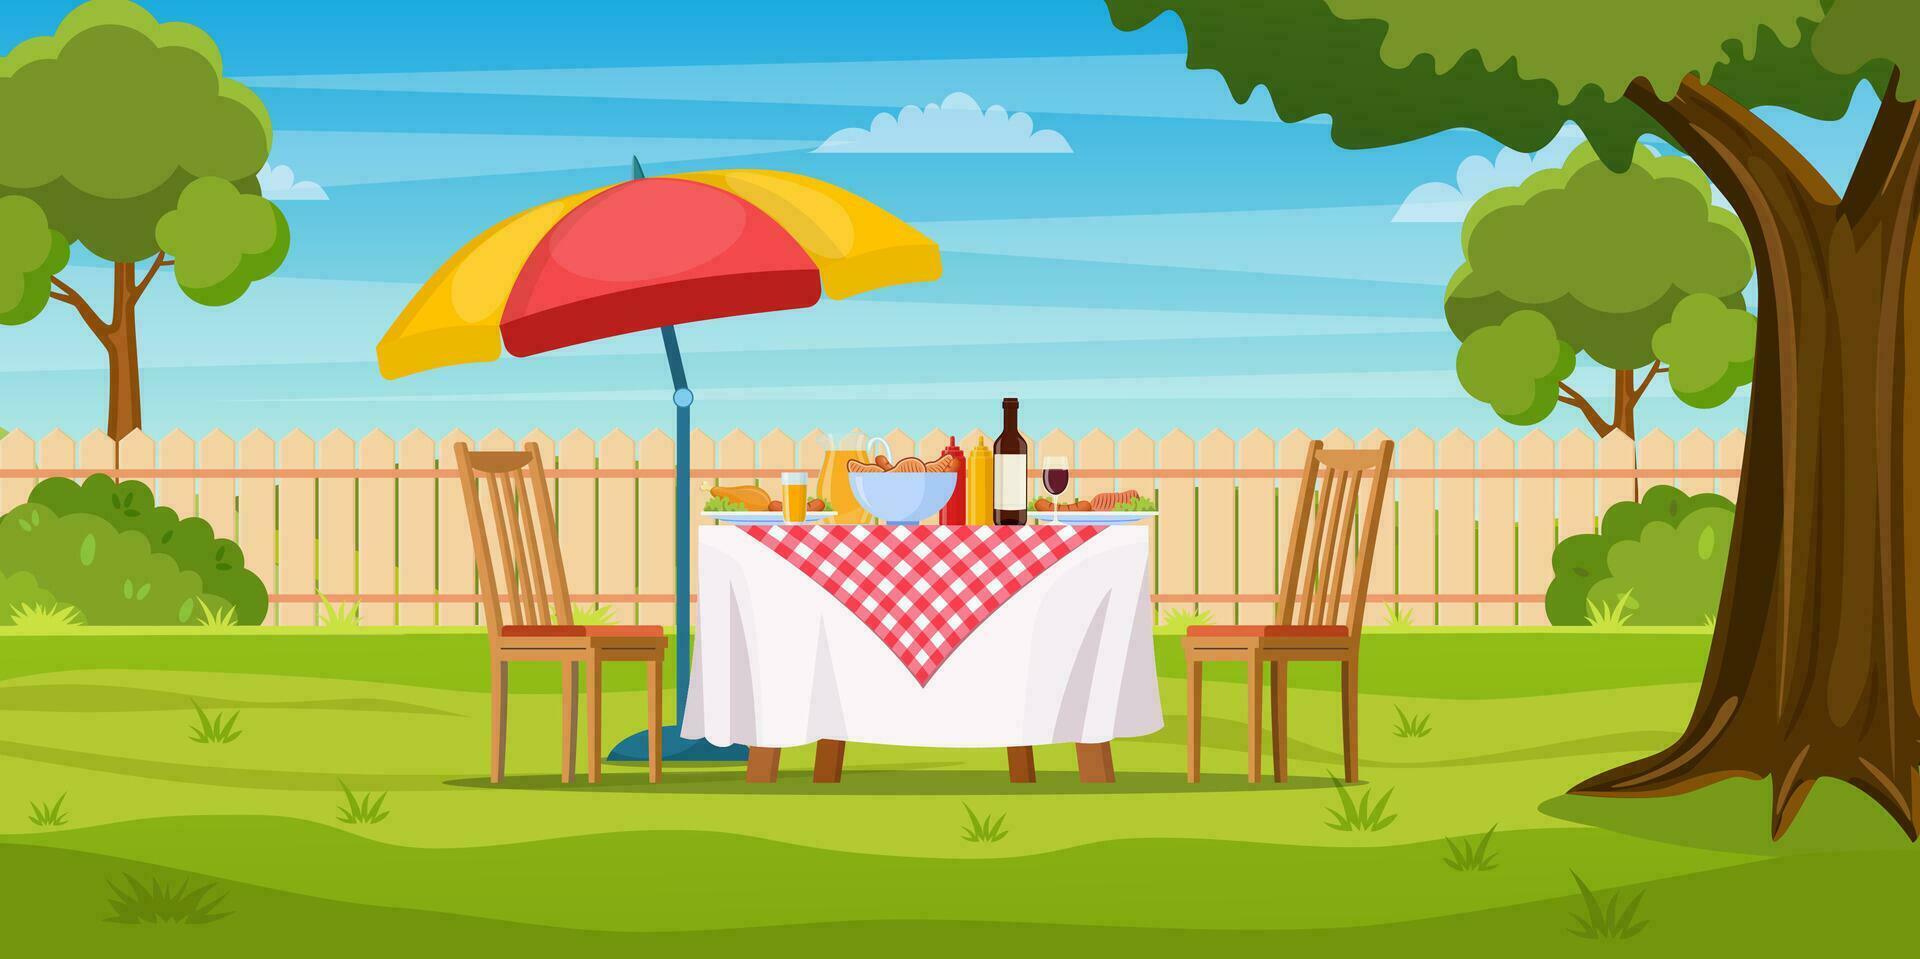 barbecue fête dans le arrière-cour avec clôture, des arbres, des buissons. pique-nique avec barbecue sur été pelouse dans parc ou jardin nourriture sur tableau, chaises et parapluie. vecteur illustration dans plat conception